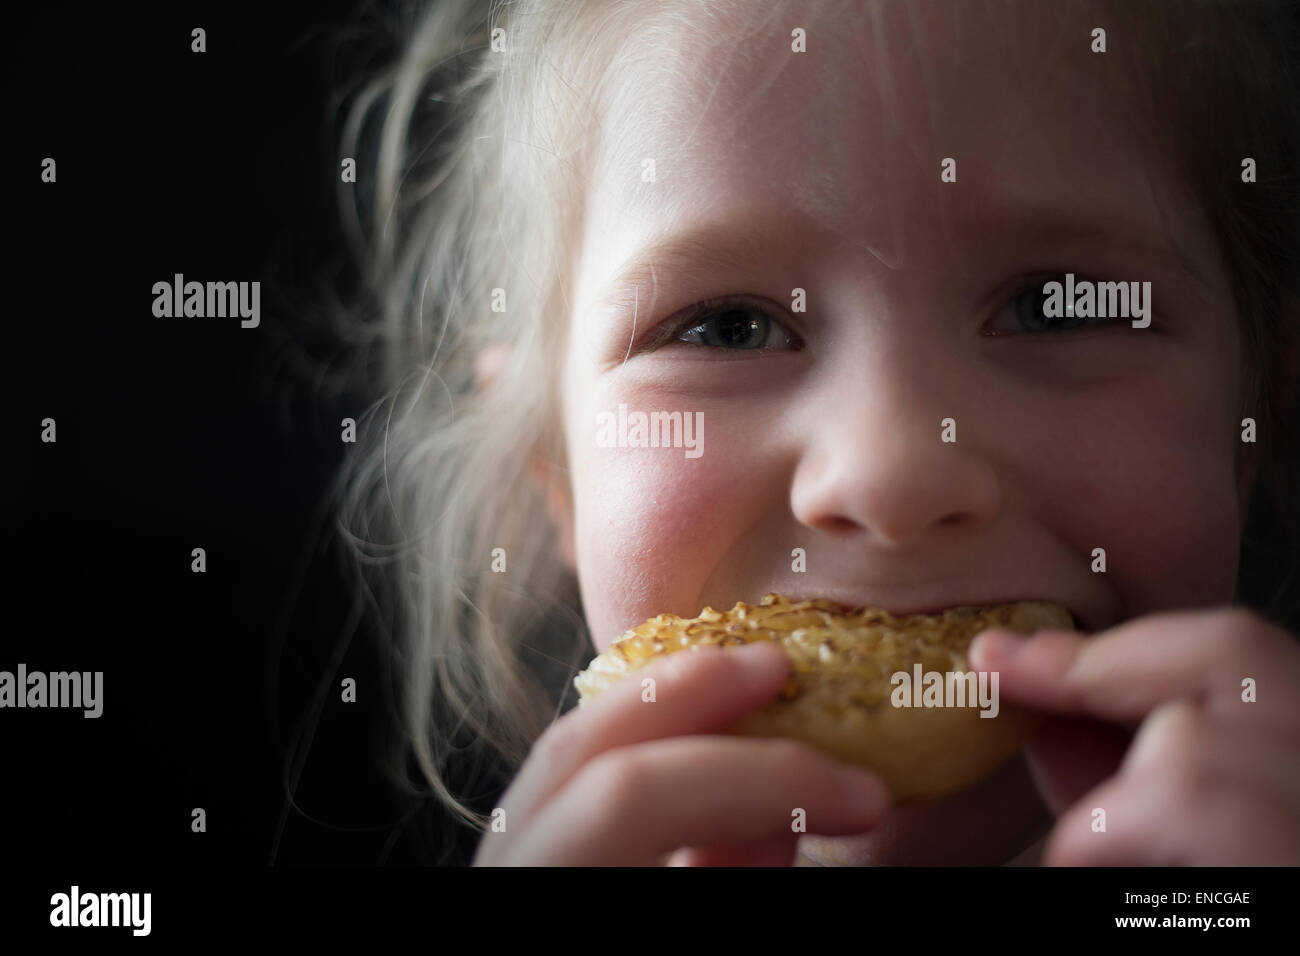 Fünf Jahre alten jungen Mädchen essen ein Fladen auf einem schwarzen Hintergrund. Gerichtete Kamera. Stockfoto